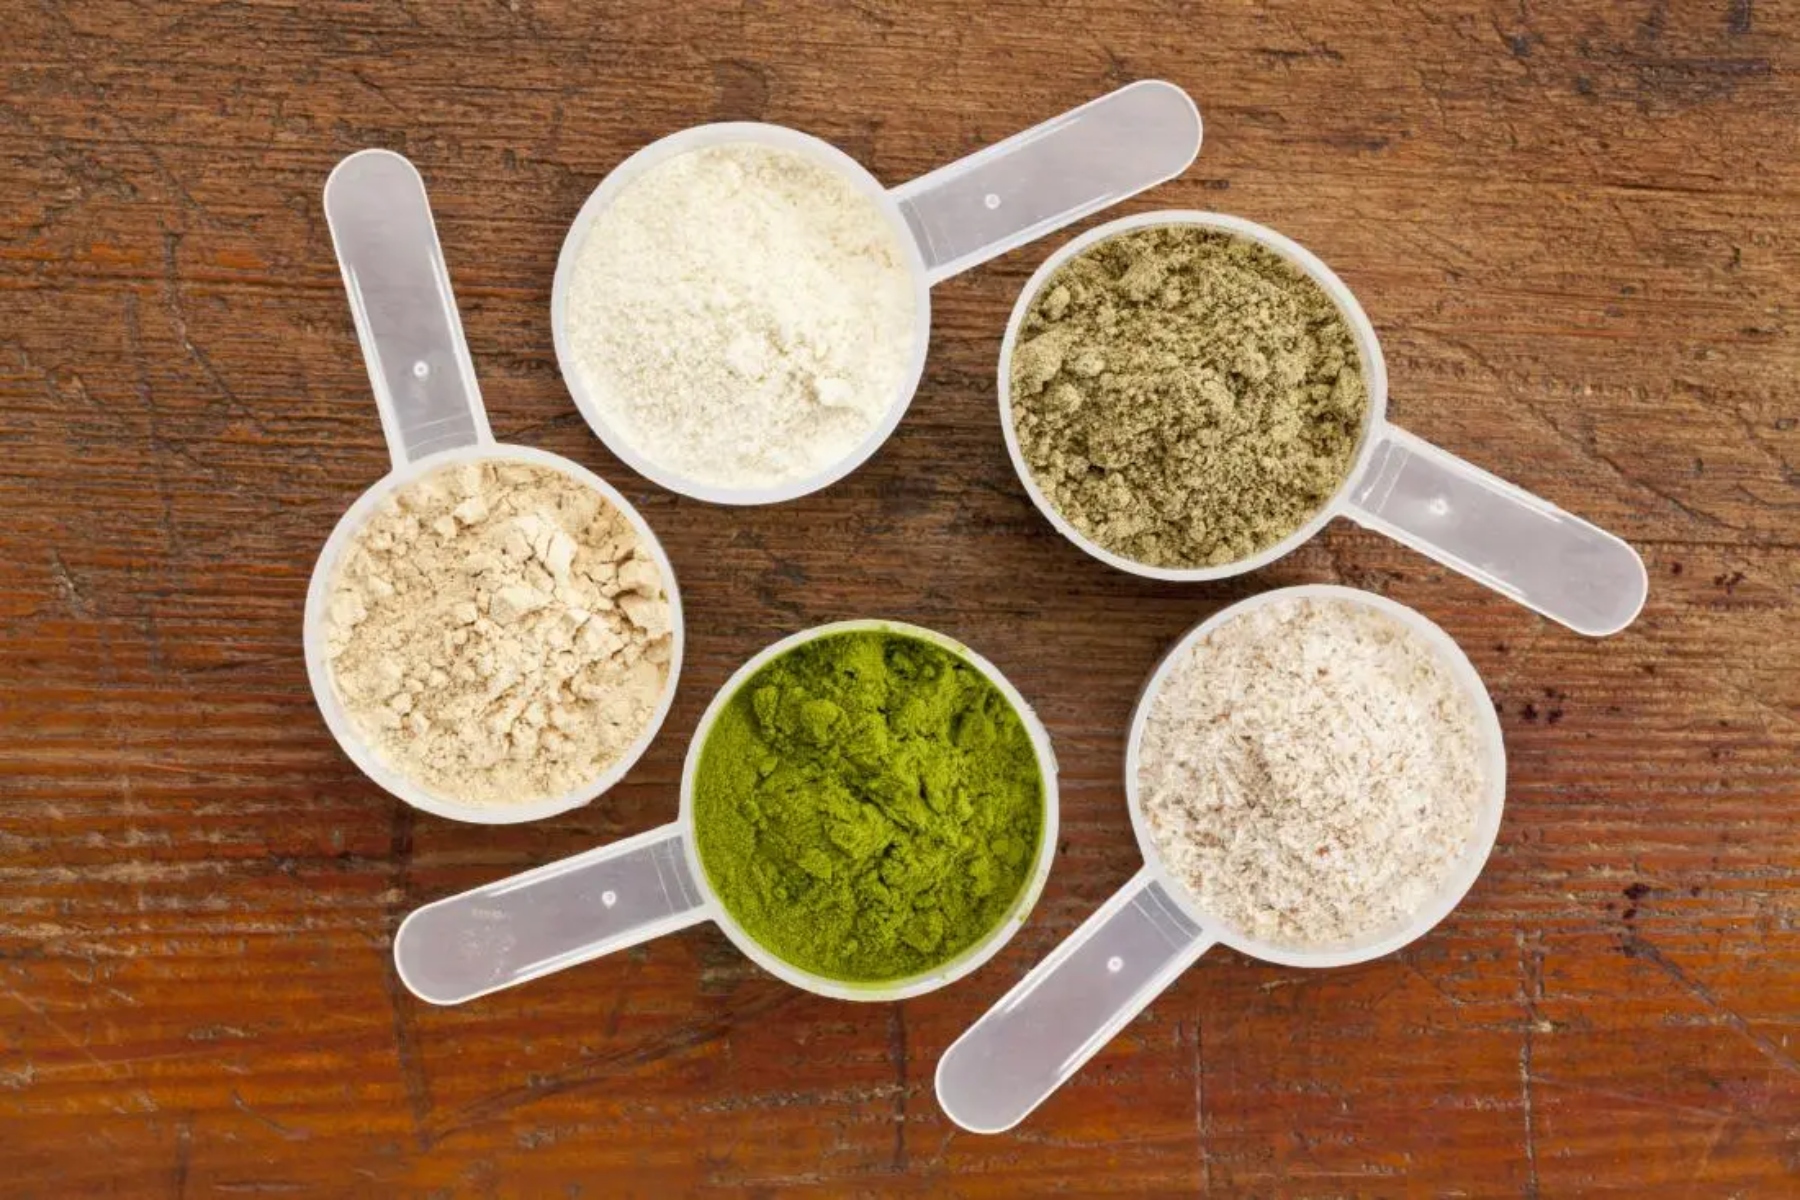 Πρωτεΐνη: Η πρωτεΐνη σε σκόνη μπορεί να σας κάνει να παχύνετε;